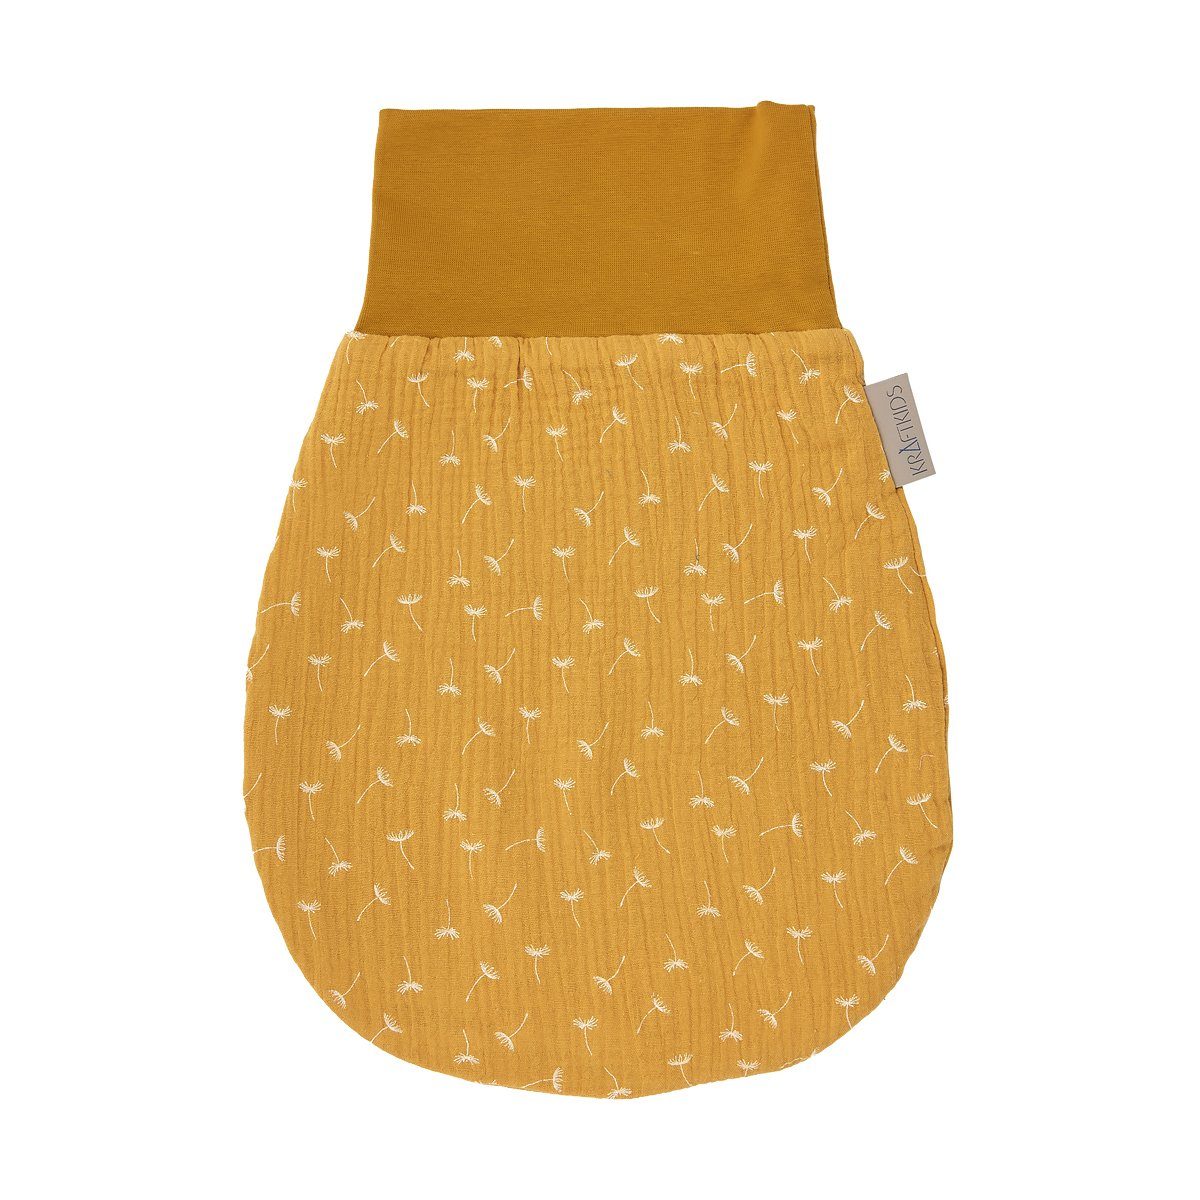 KraftKids Babyschlafsack Musselin gelb Pusteblumen, Sommer/Frühling-Variante, 100% Baumwolle, hochwärtiger Stoff, zwei Schichten Stoff